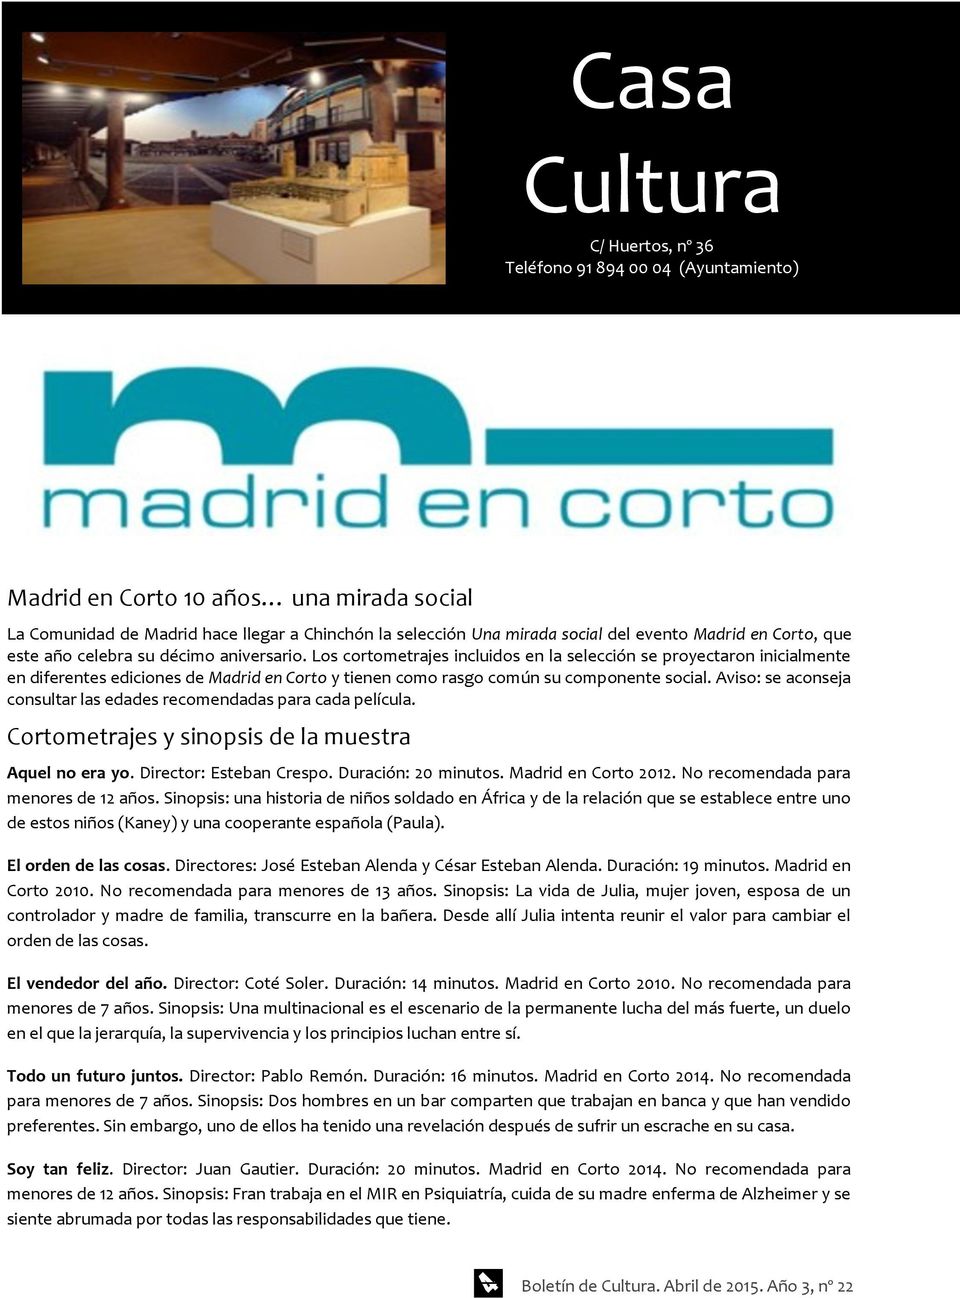 Los cortometrajes incluidos en la selección se proyectaron inicialmente en diferentes ediciones de Madrid en Corto y tienen como rasgo común su componente social.